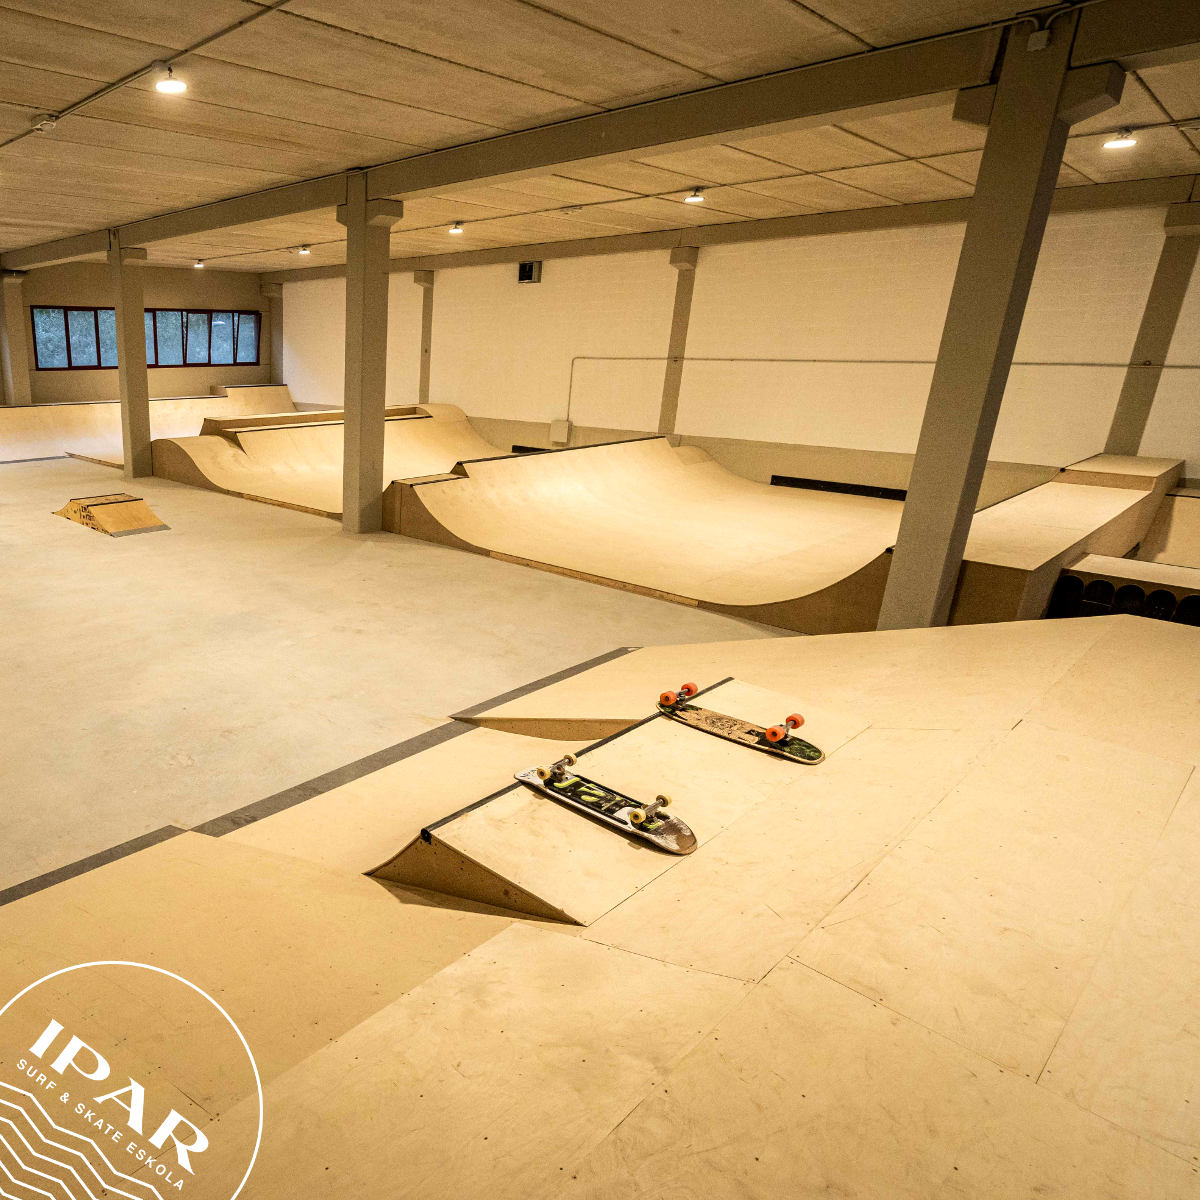 Escuel de Skate IPAR - skatepark indoor en Eibar